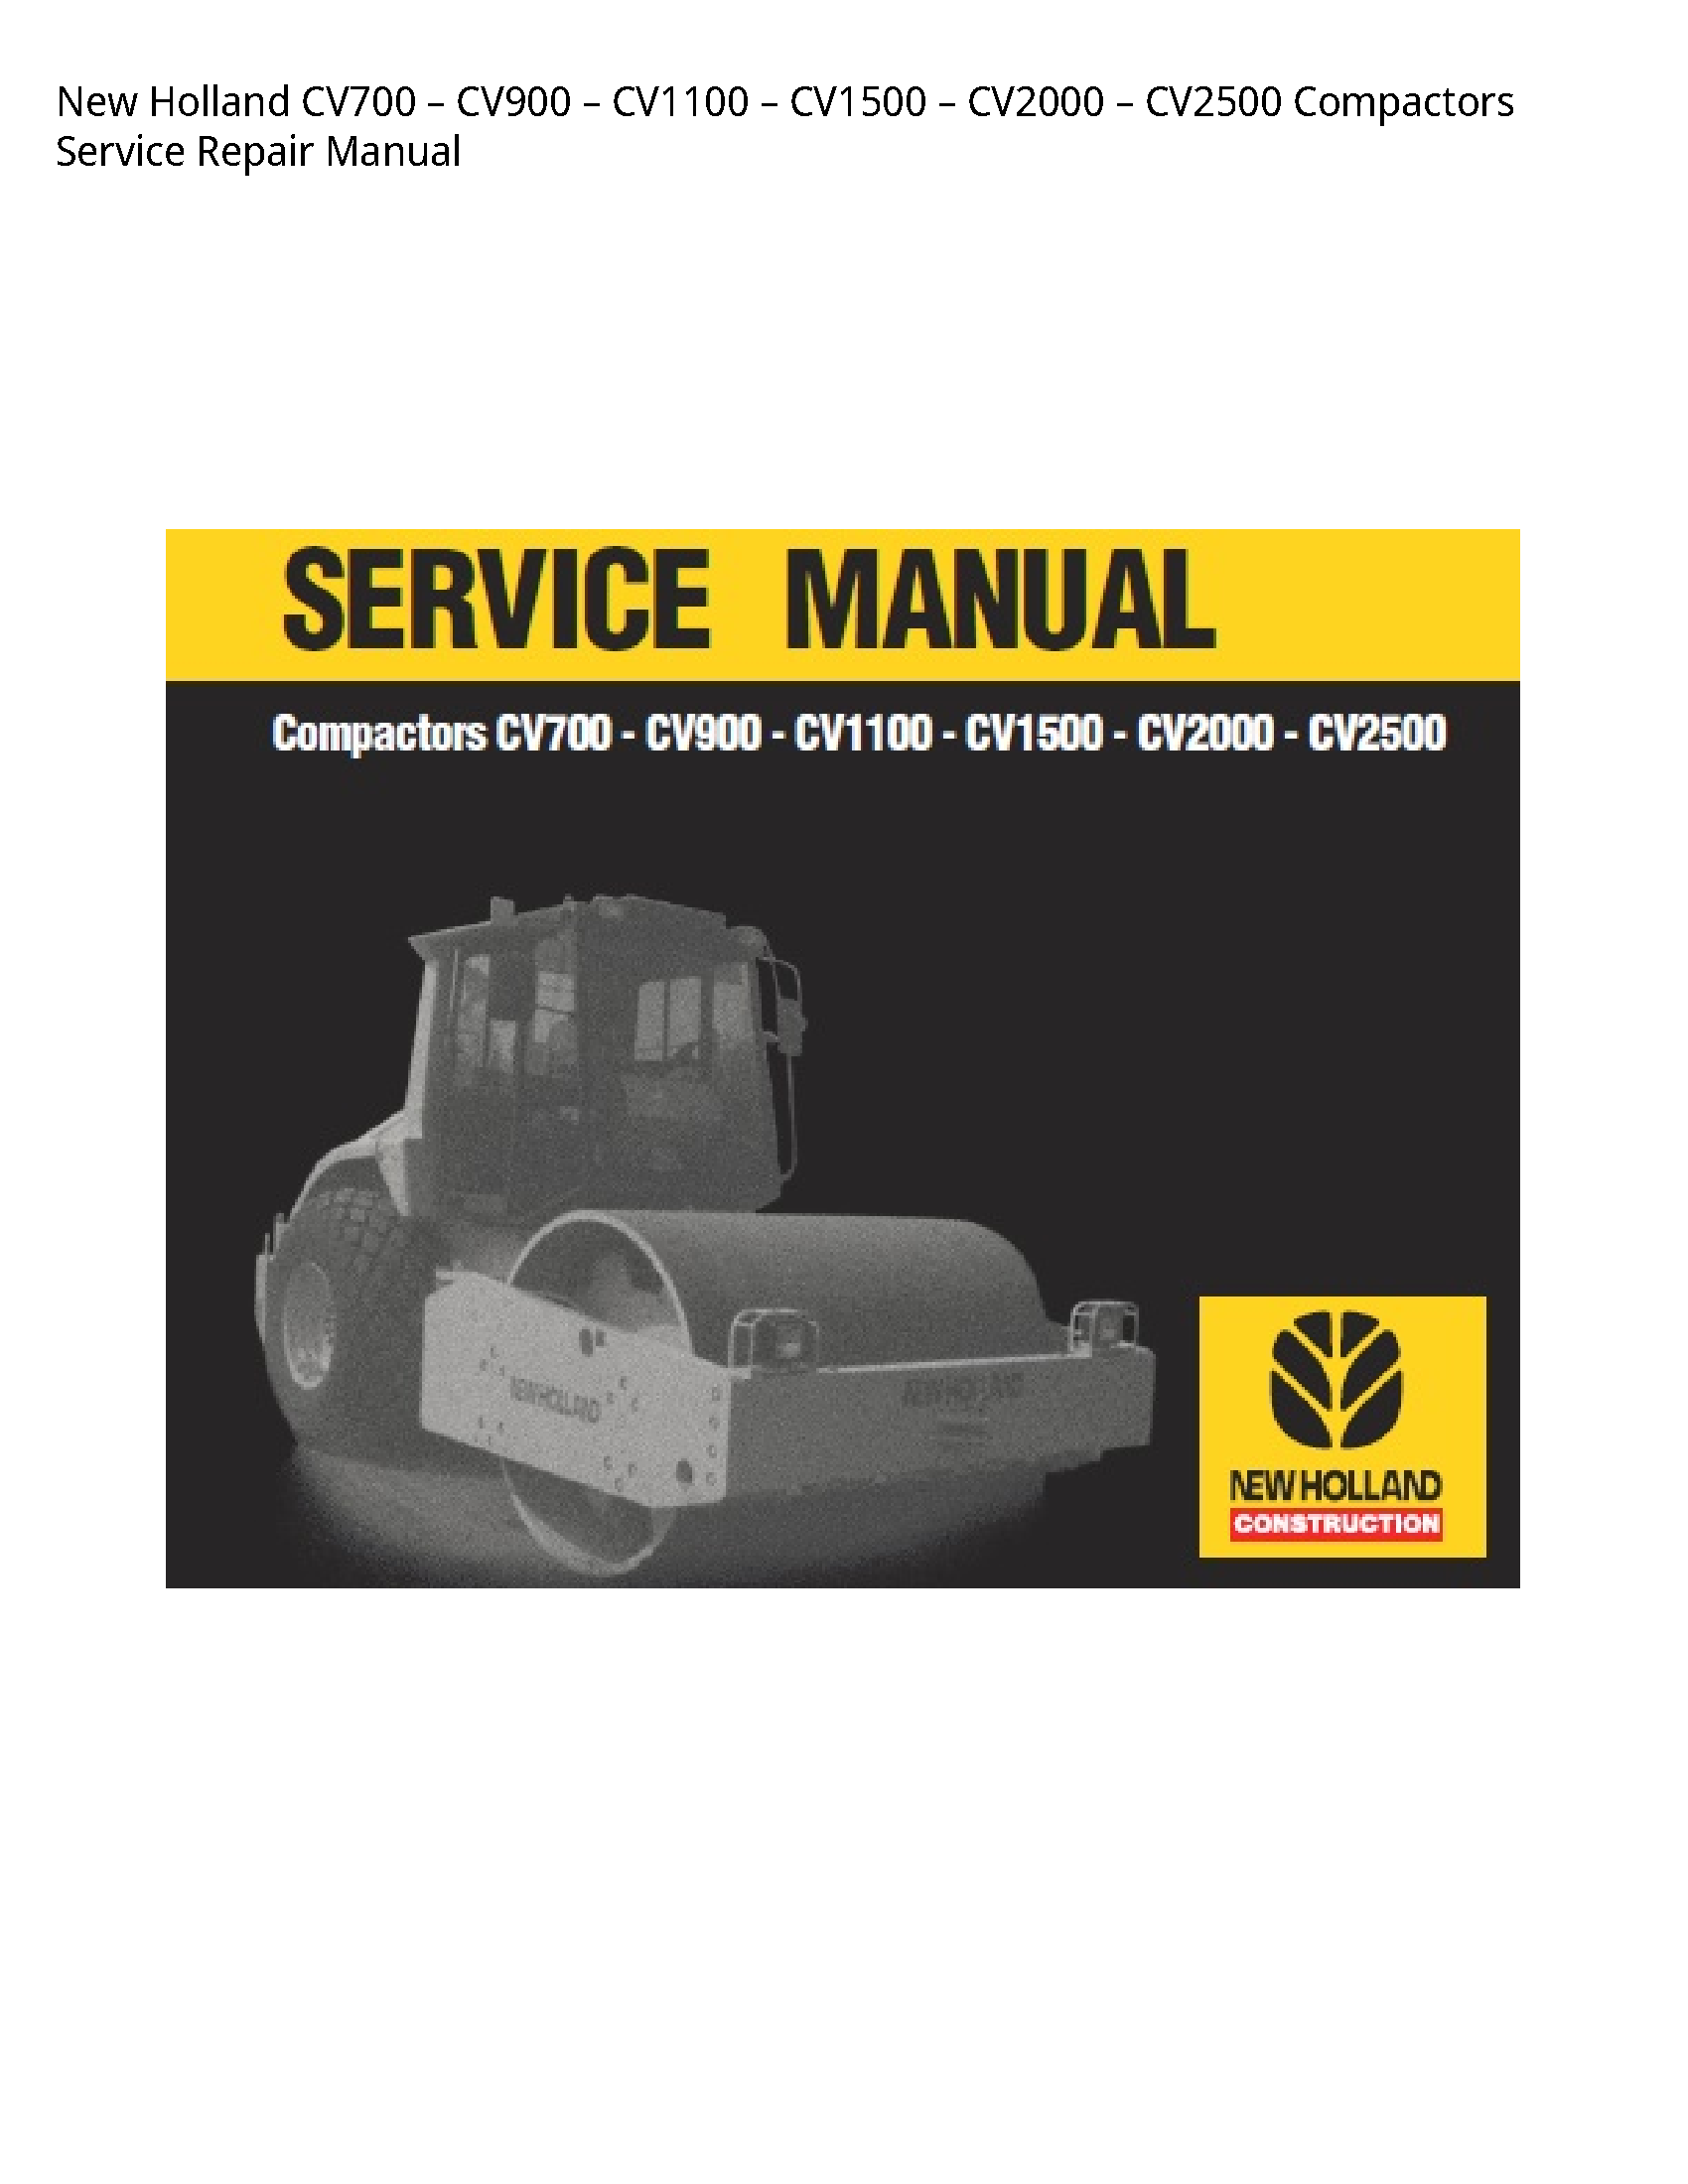 New Holland CV700 Compactors manual